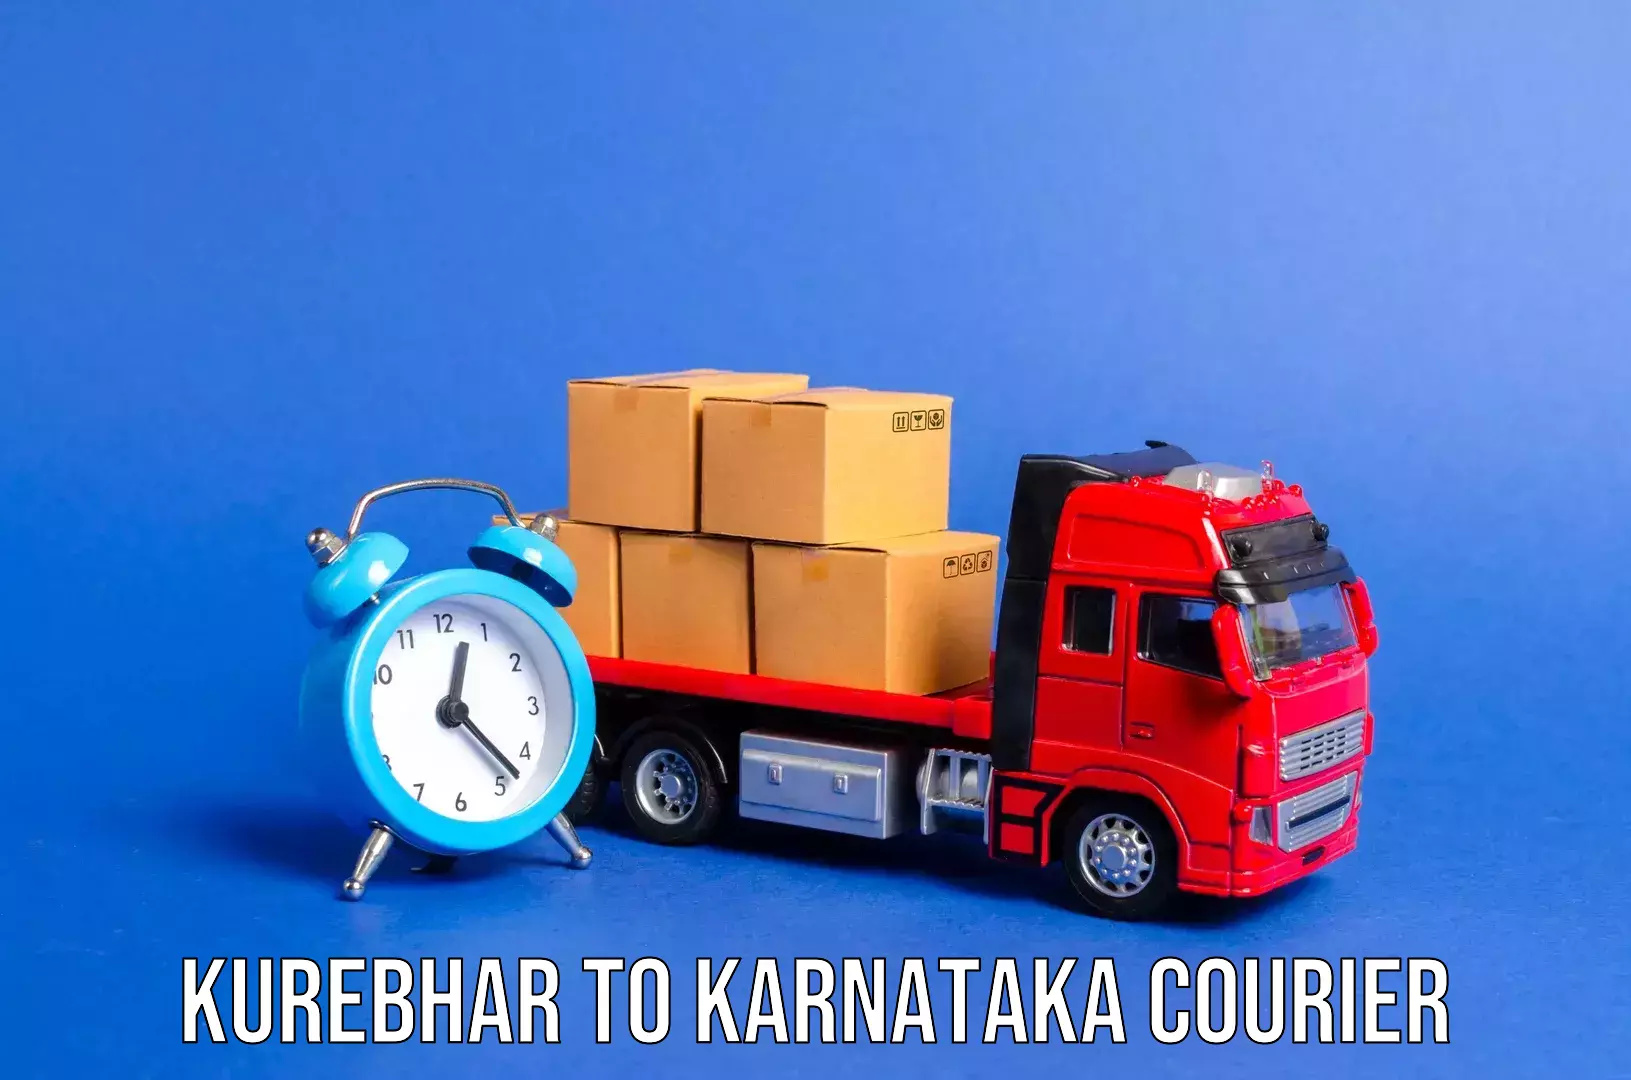 Baggage transport coordination Kurebhar to Karnataka